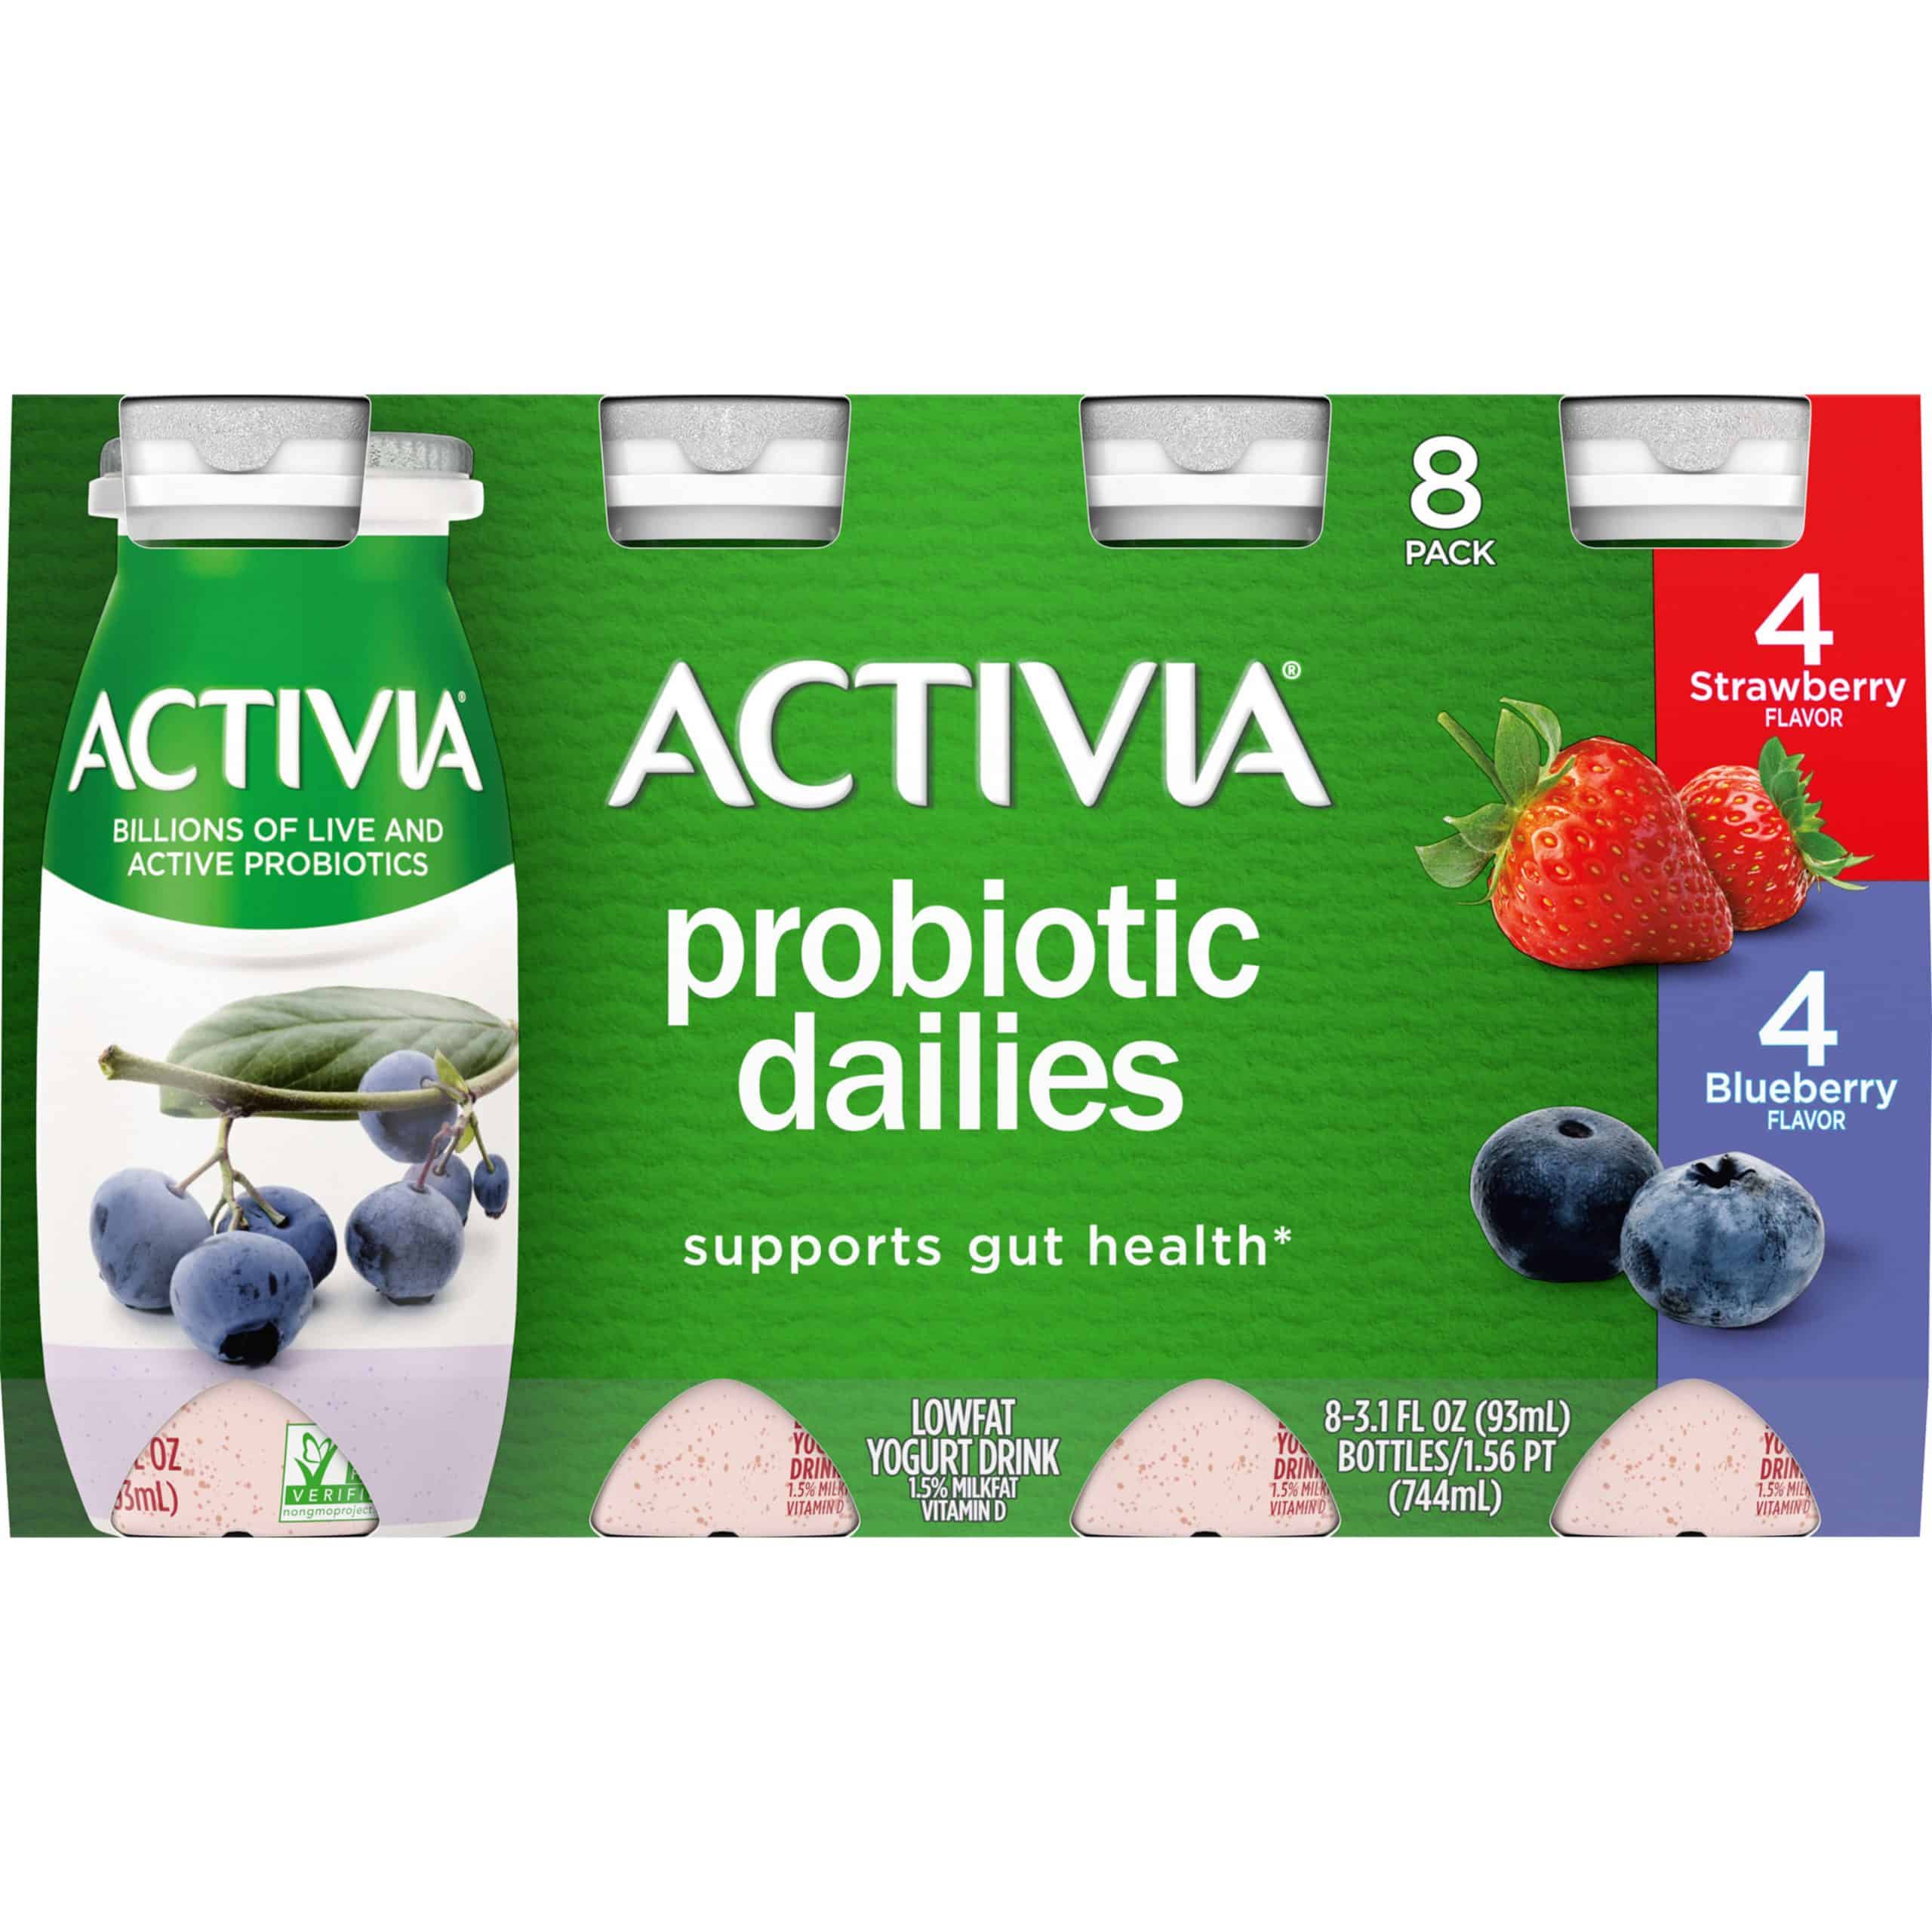 Is Activia A Good Probiotic